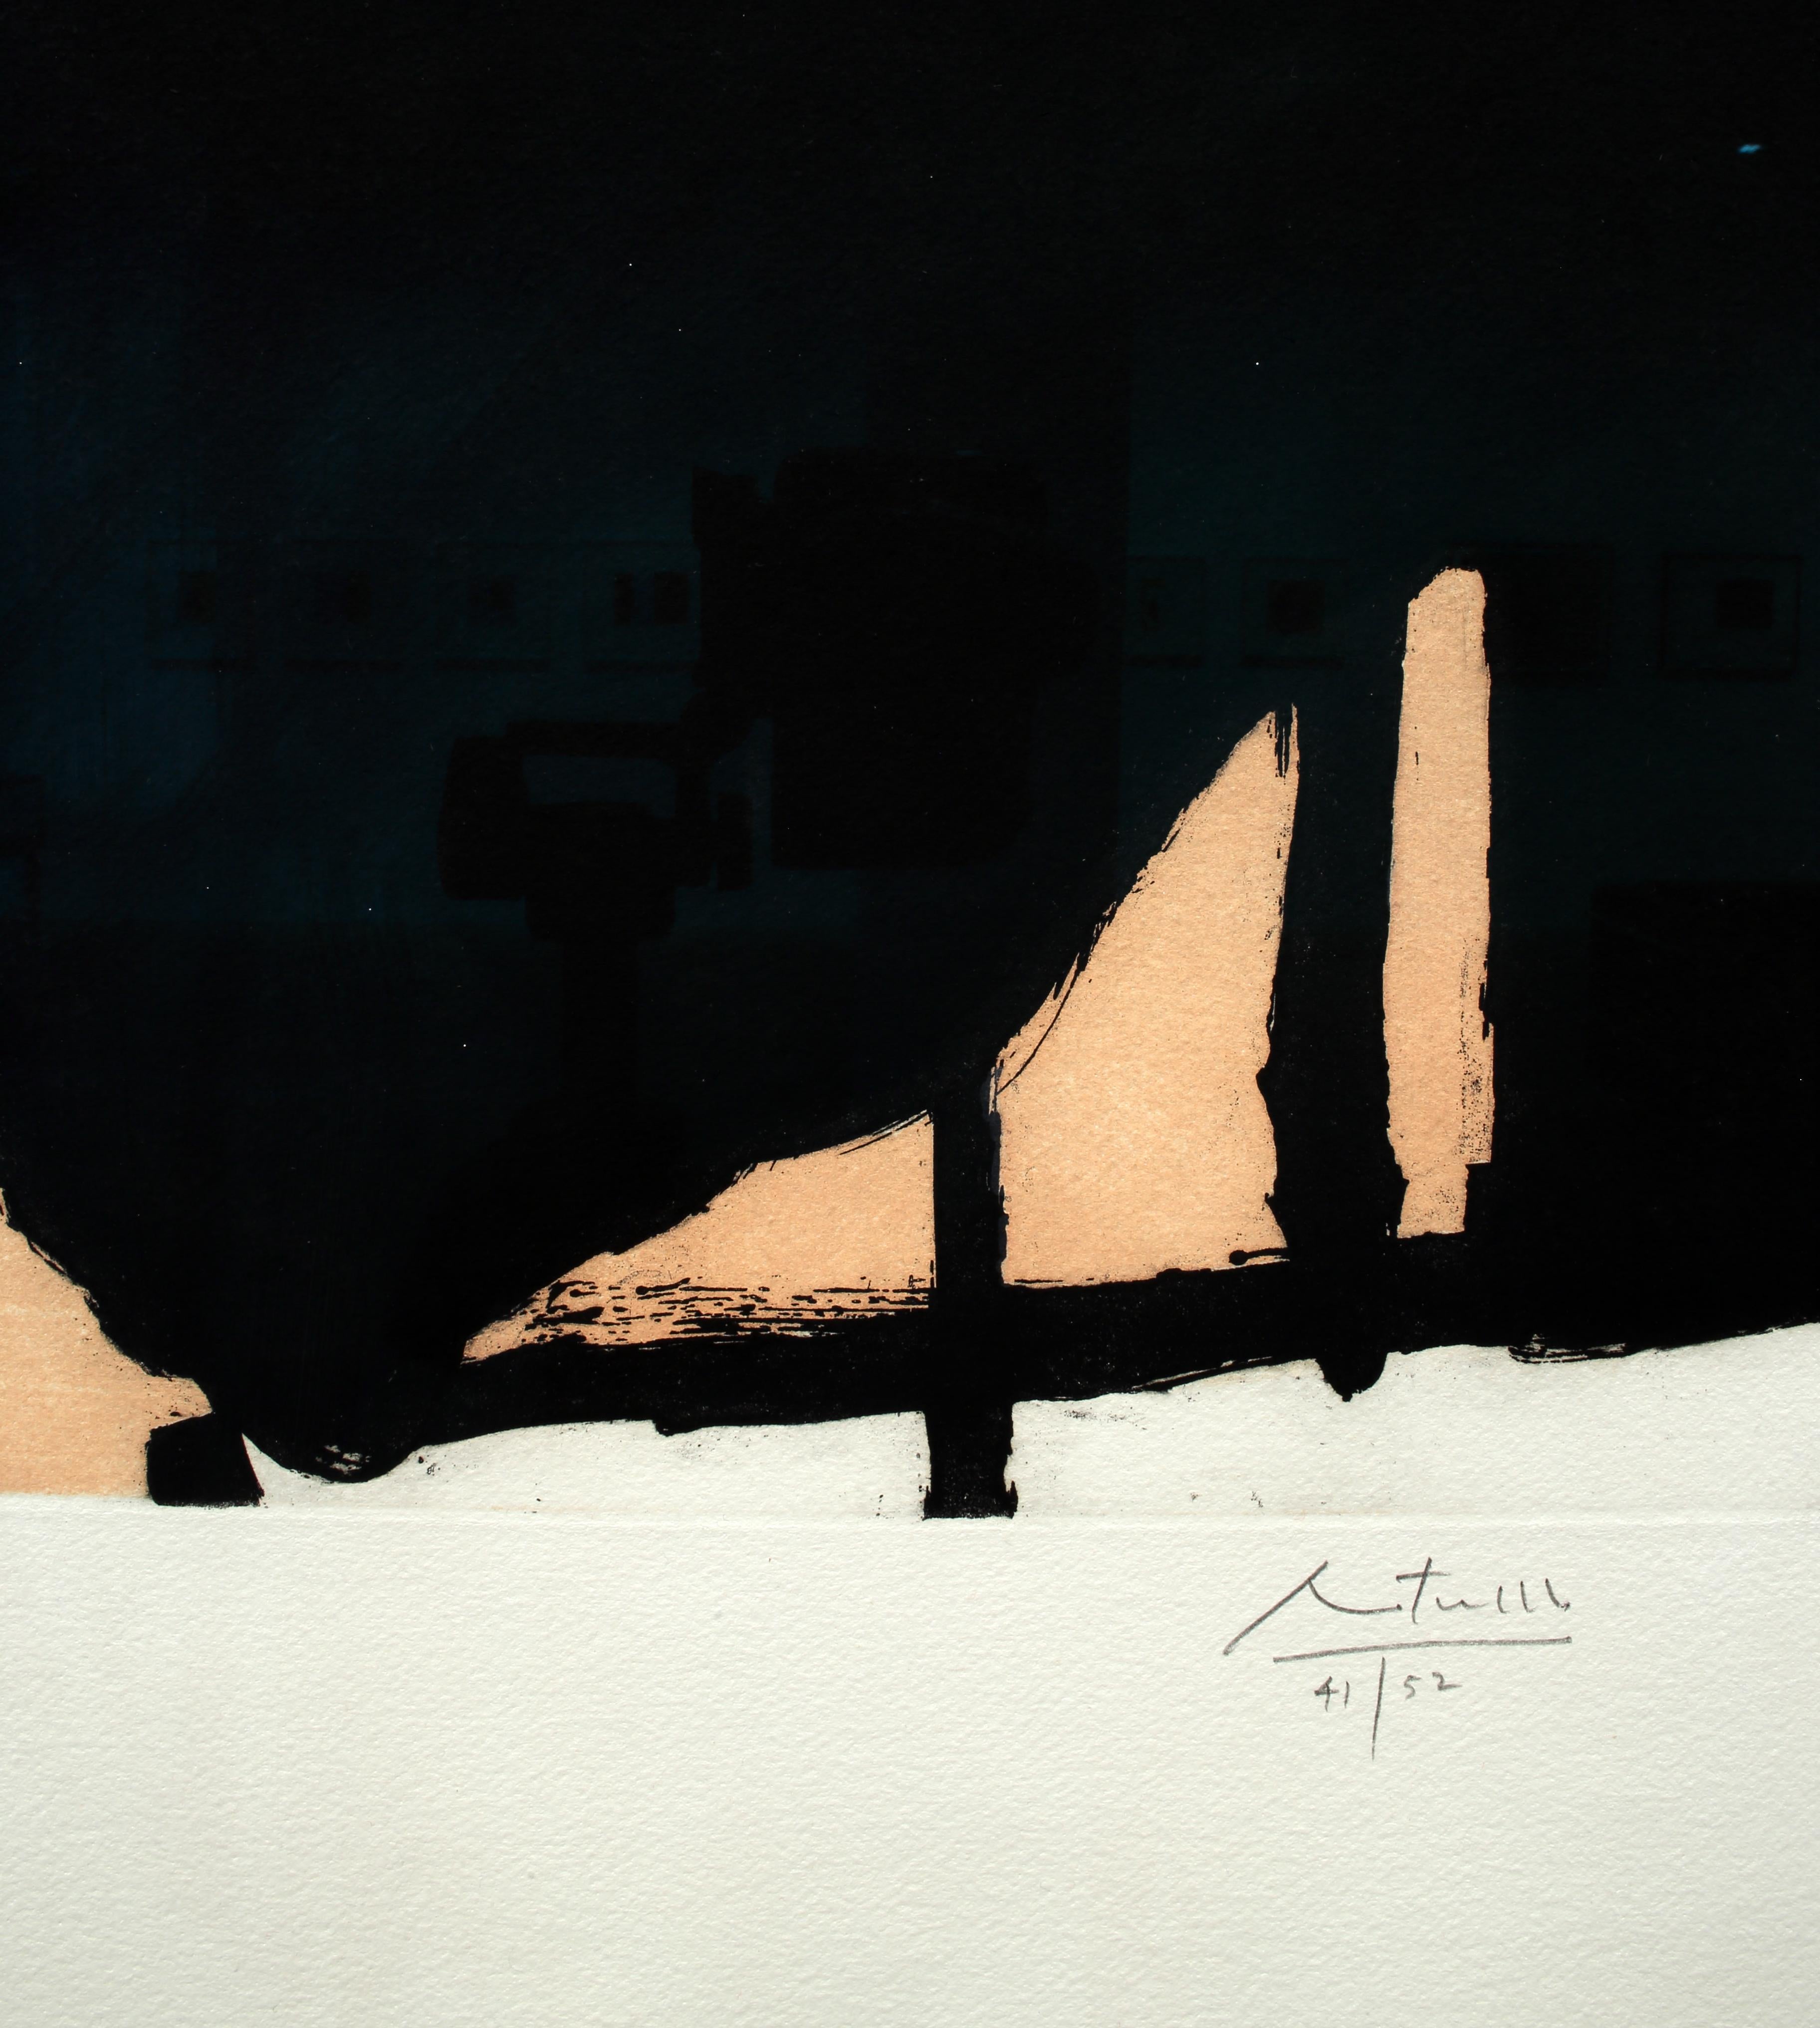 Aquatinte, gravure à l'eau-forte et aquatinte sur papier fait main Georges Duchene Hawthorne de Larroque
87,6 x 61 cm (34 1/2 x 24 pouces)
Édition de 52 